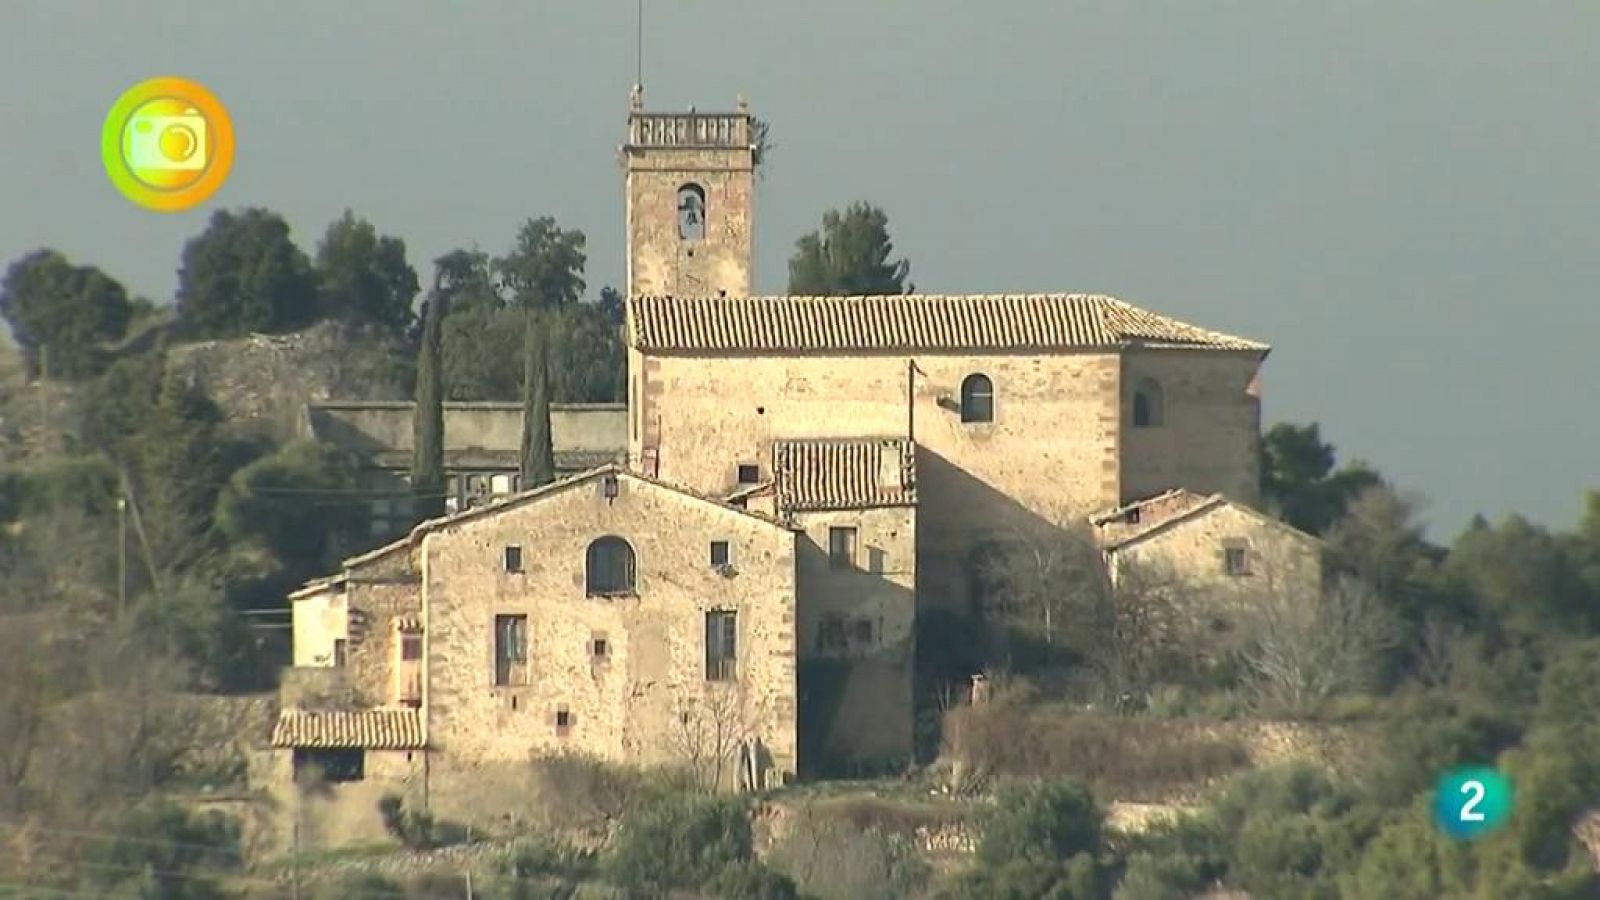  Turismo rural, El Baix Solsonès, Lleida